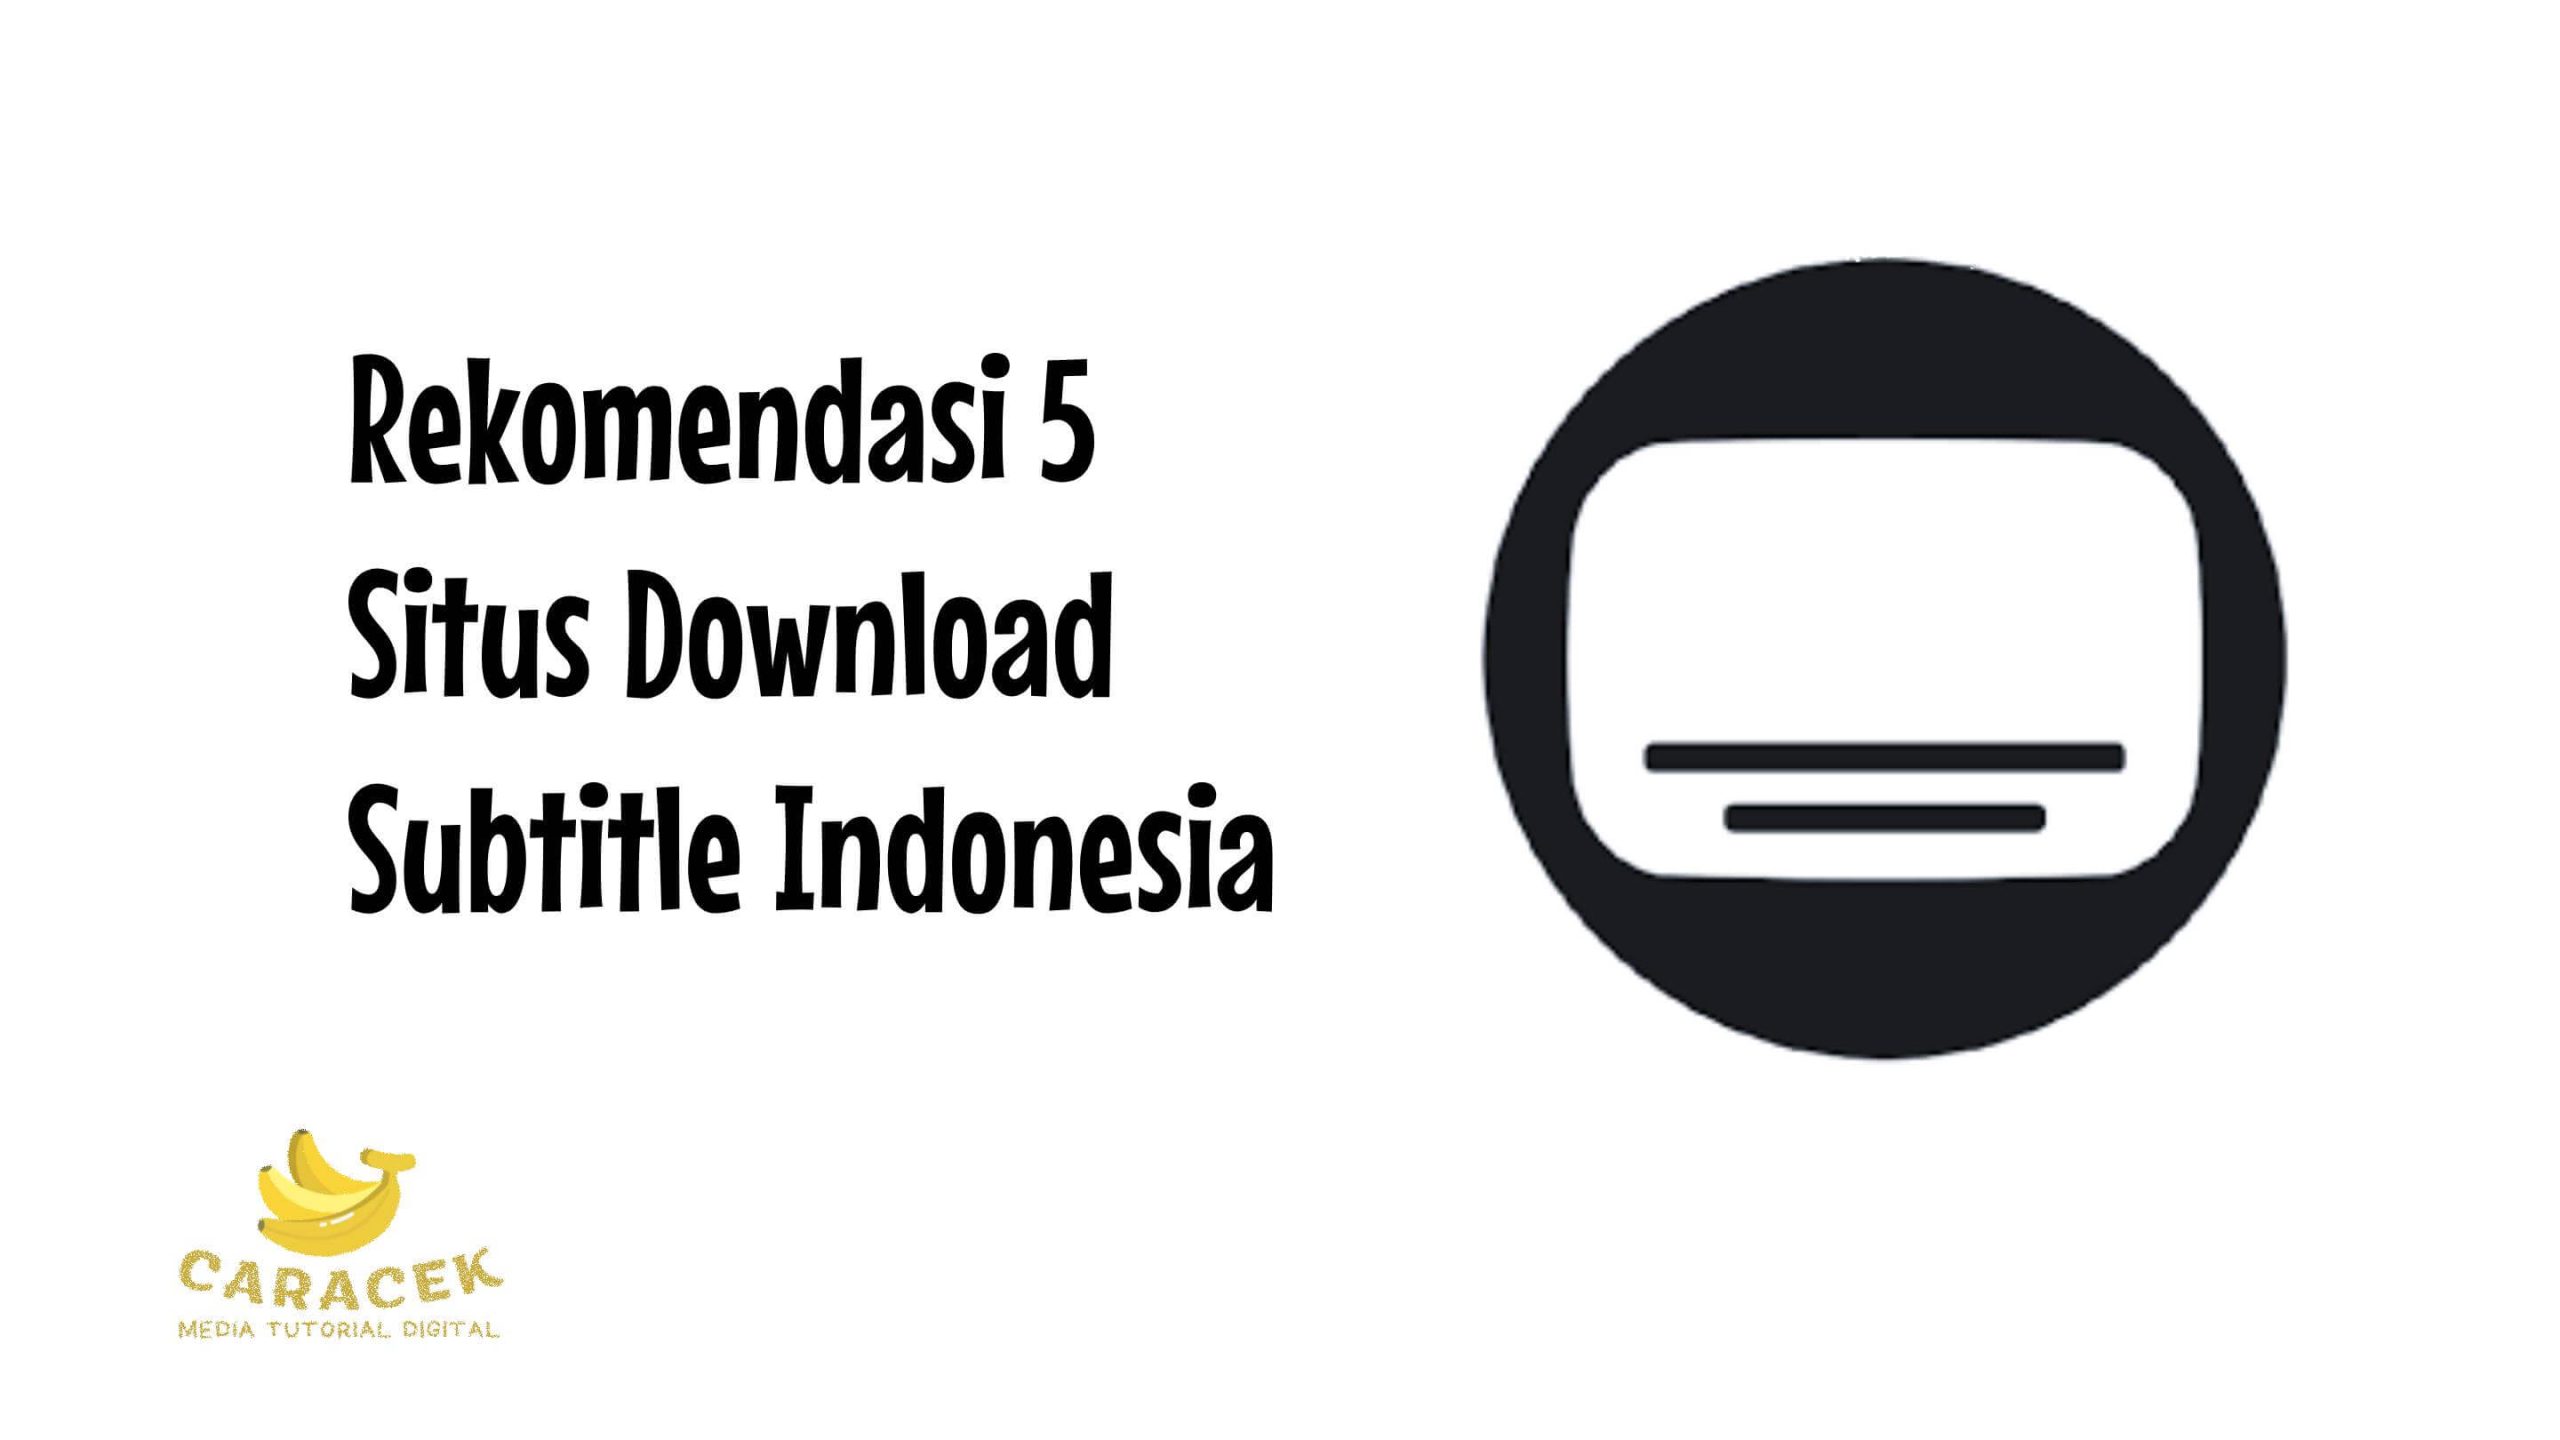 Situs Download Subtitle Indonesia